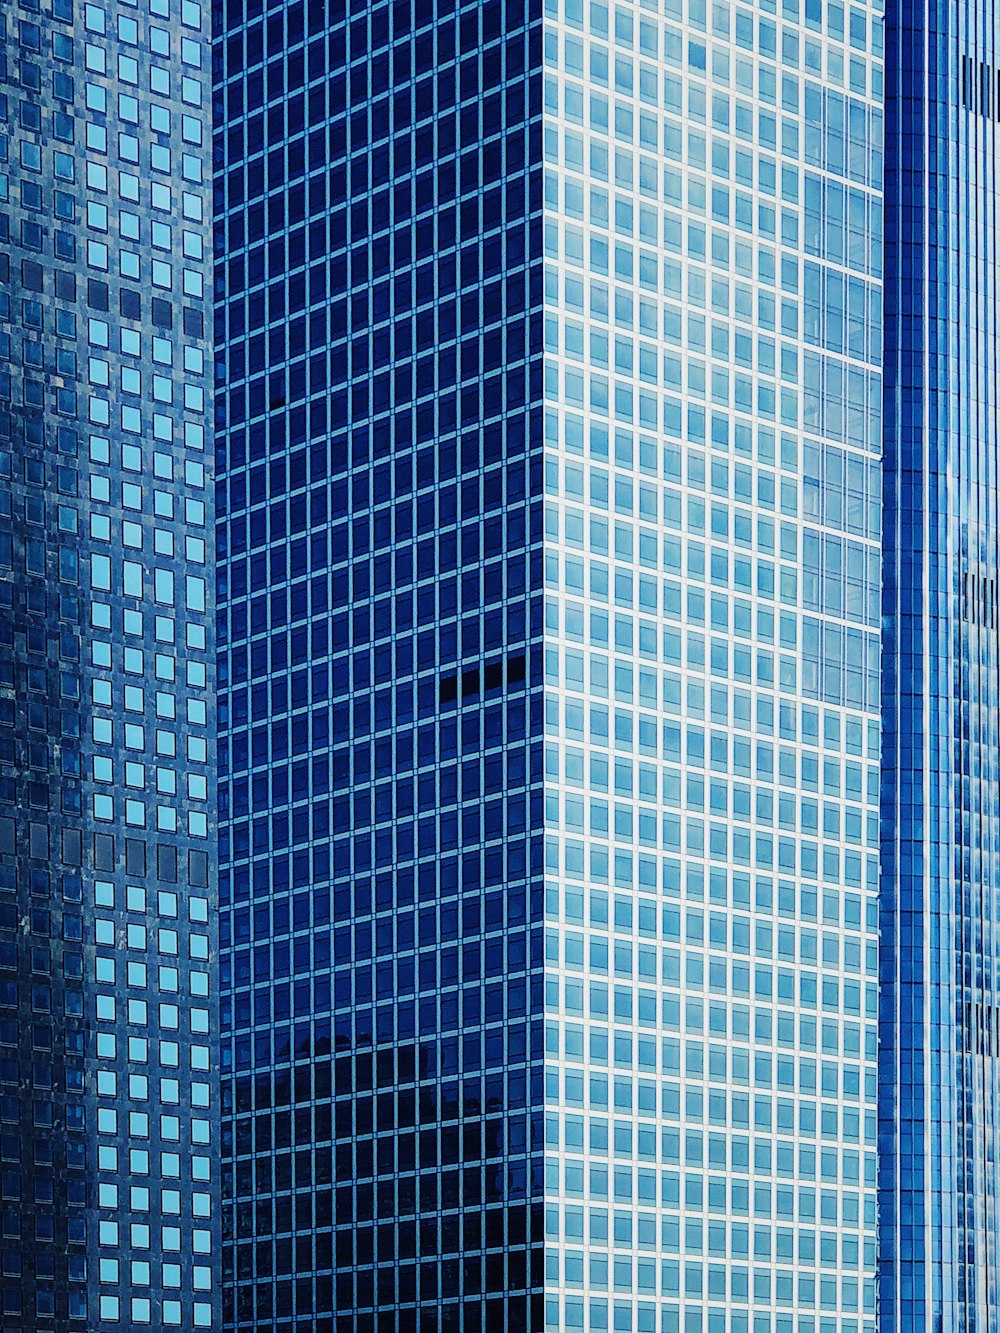 grattacielo con vista sulle finestre in vetro